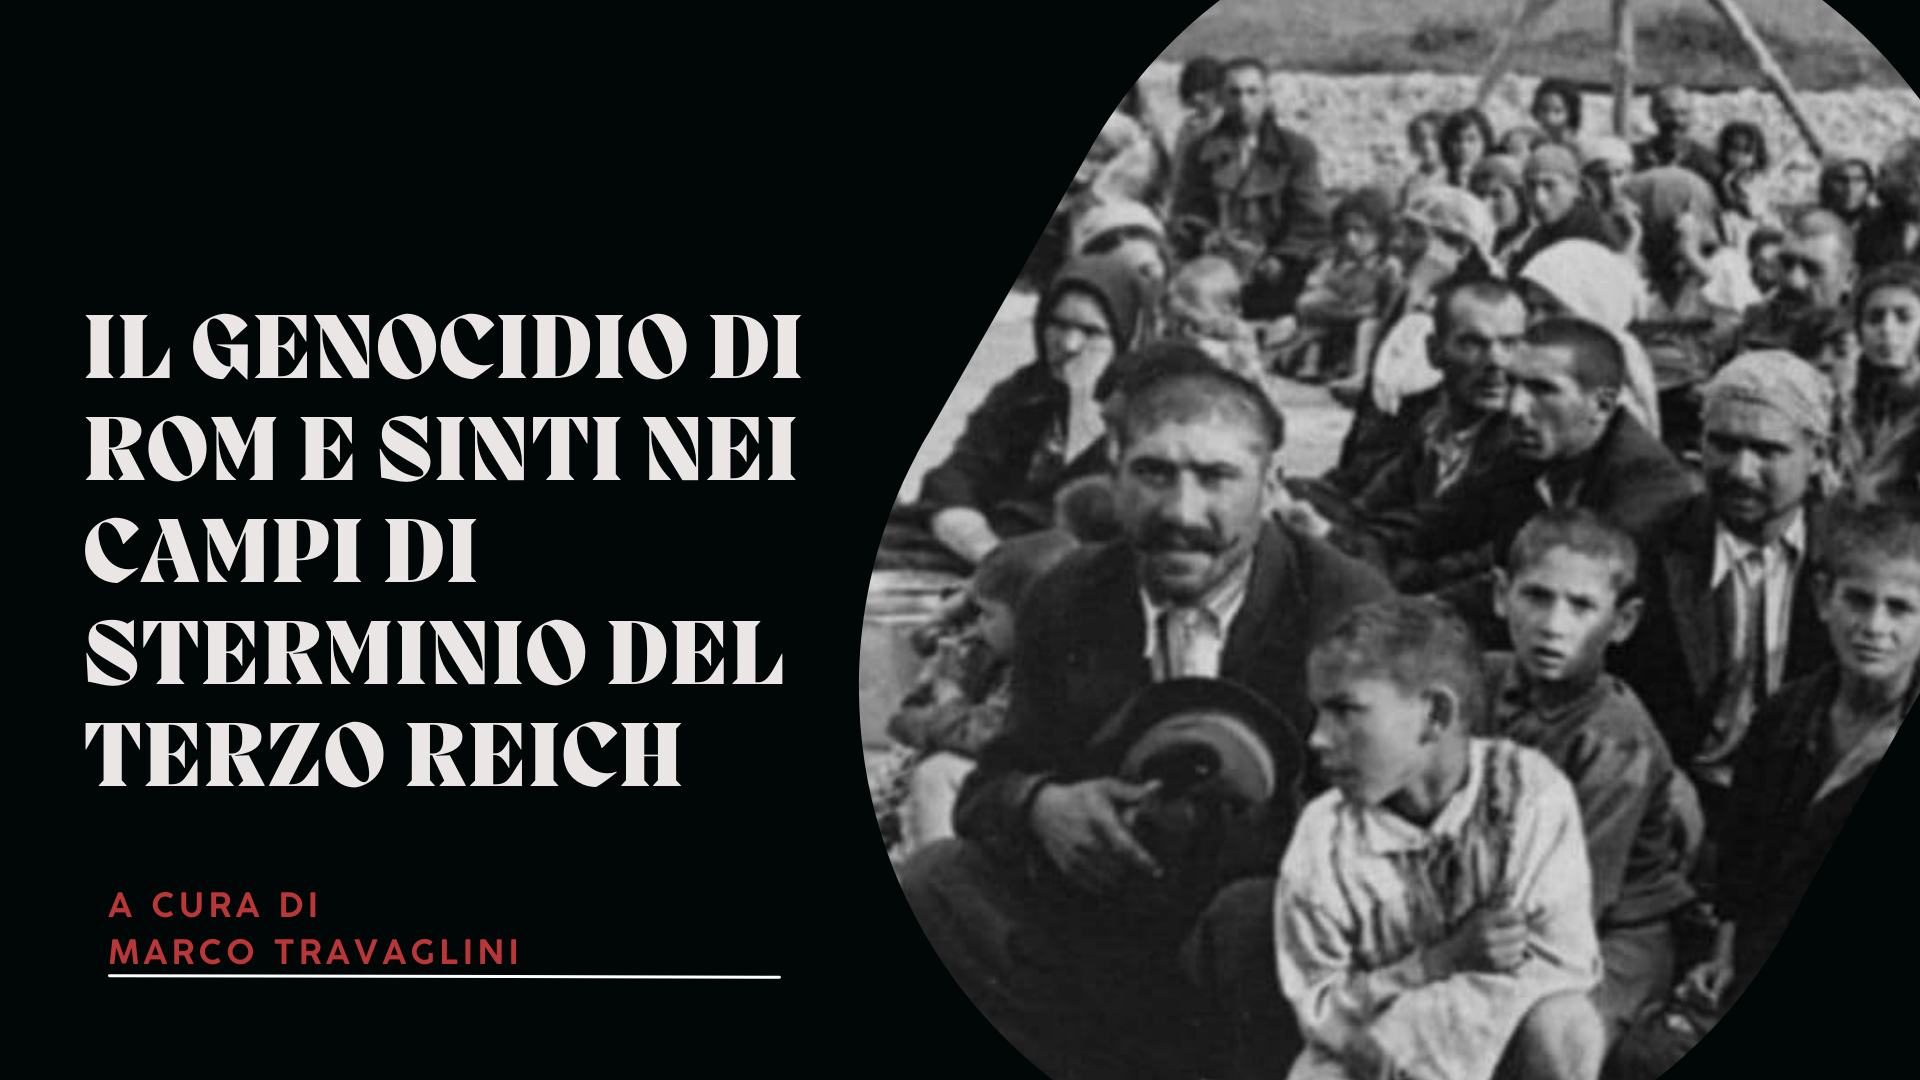 Il genocidio di Rom e Sinti nei campi di sterminio del Terzo Reich